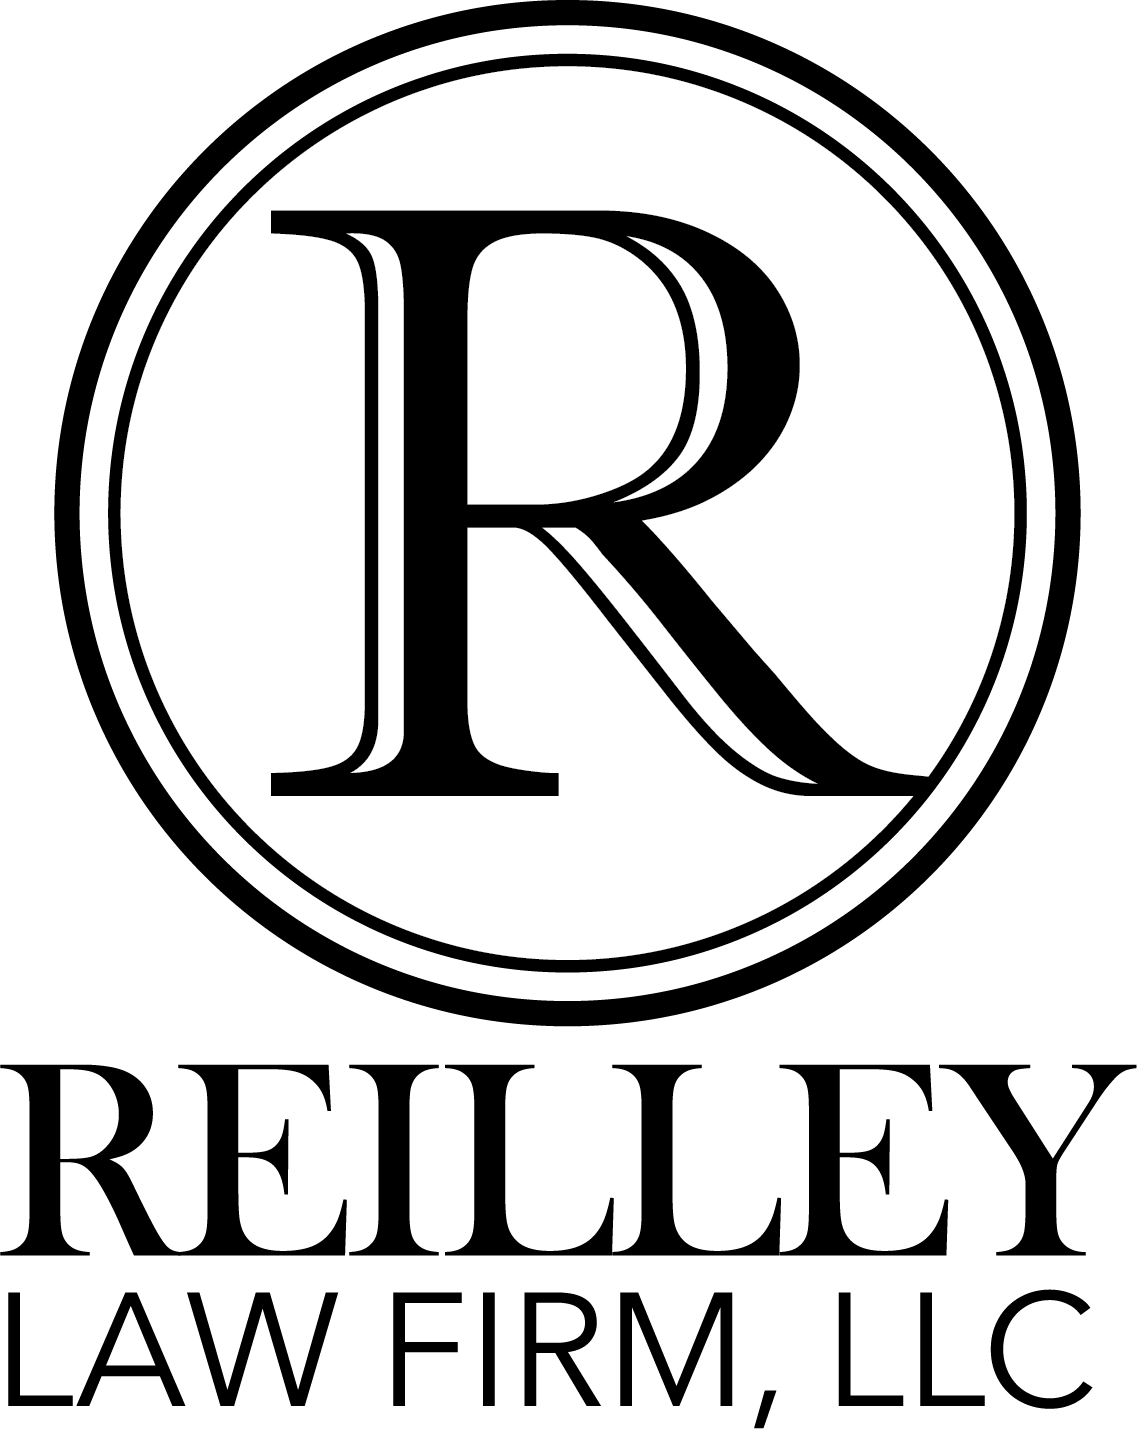 REILLEY LAW FIRM, LLC.